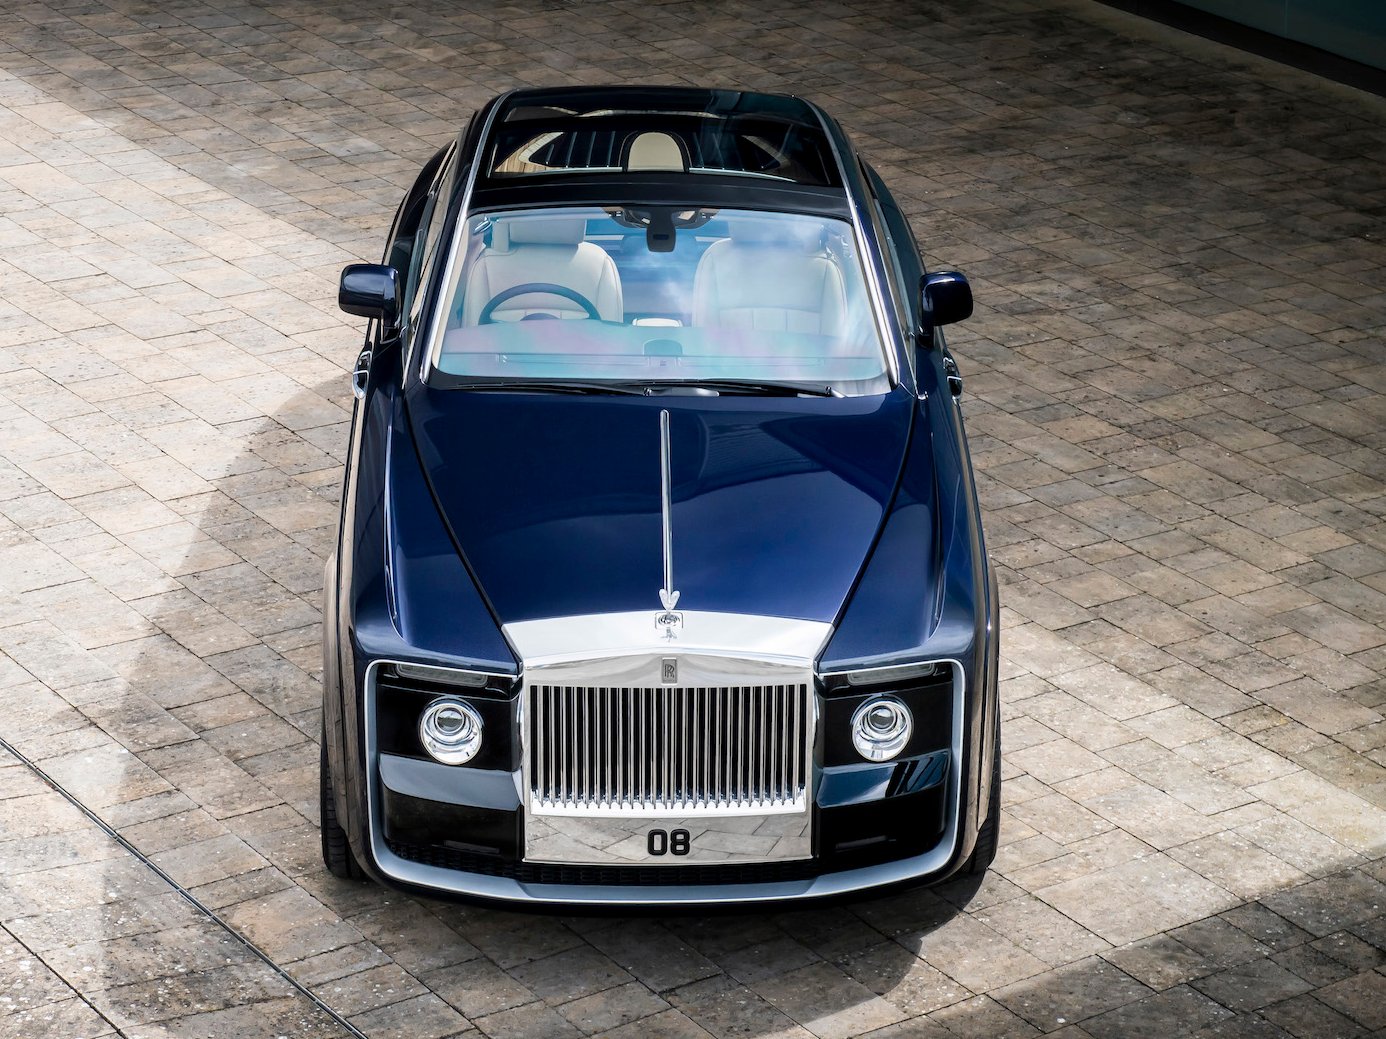 Chiêm ngưỡng siêu xe Rolls-Royce đắt nhất thế giới